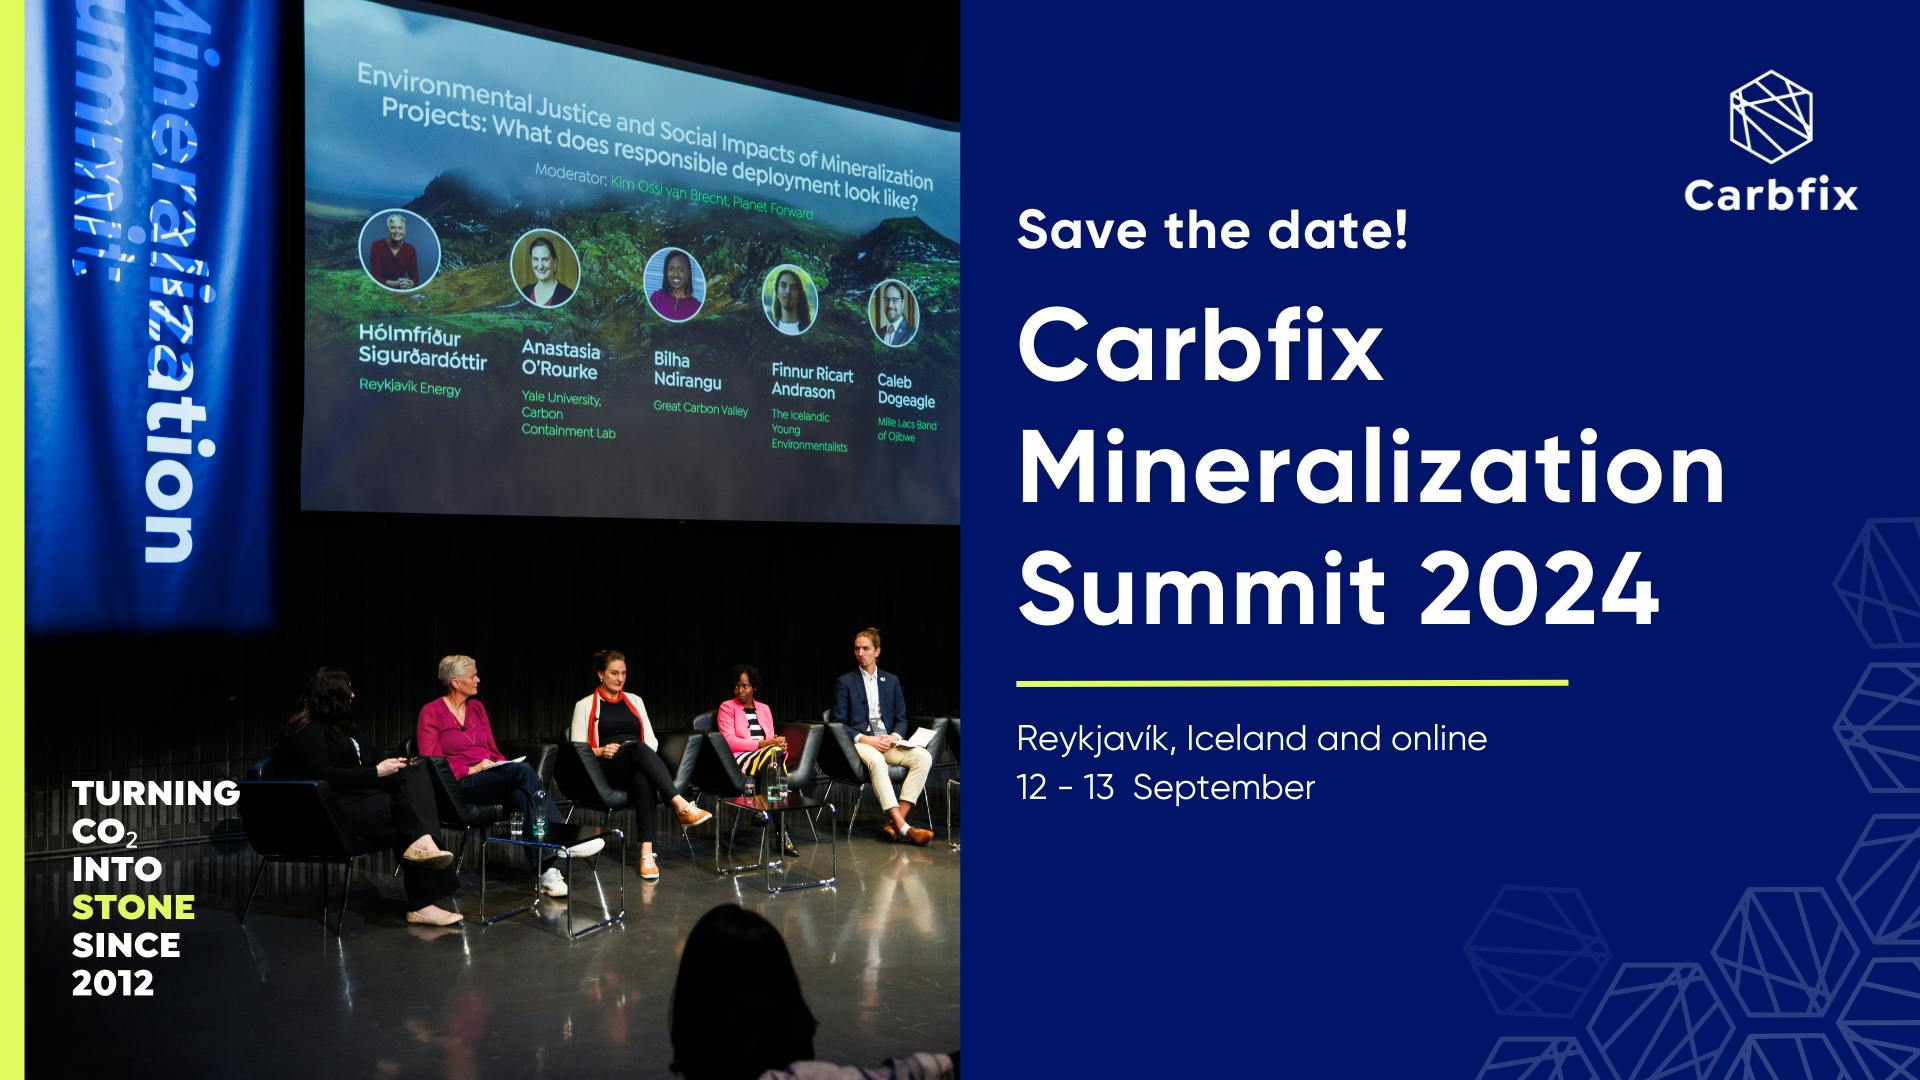 Carbfix Mineralization Summit 2024 Save the Date!